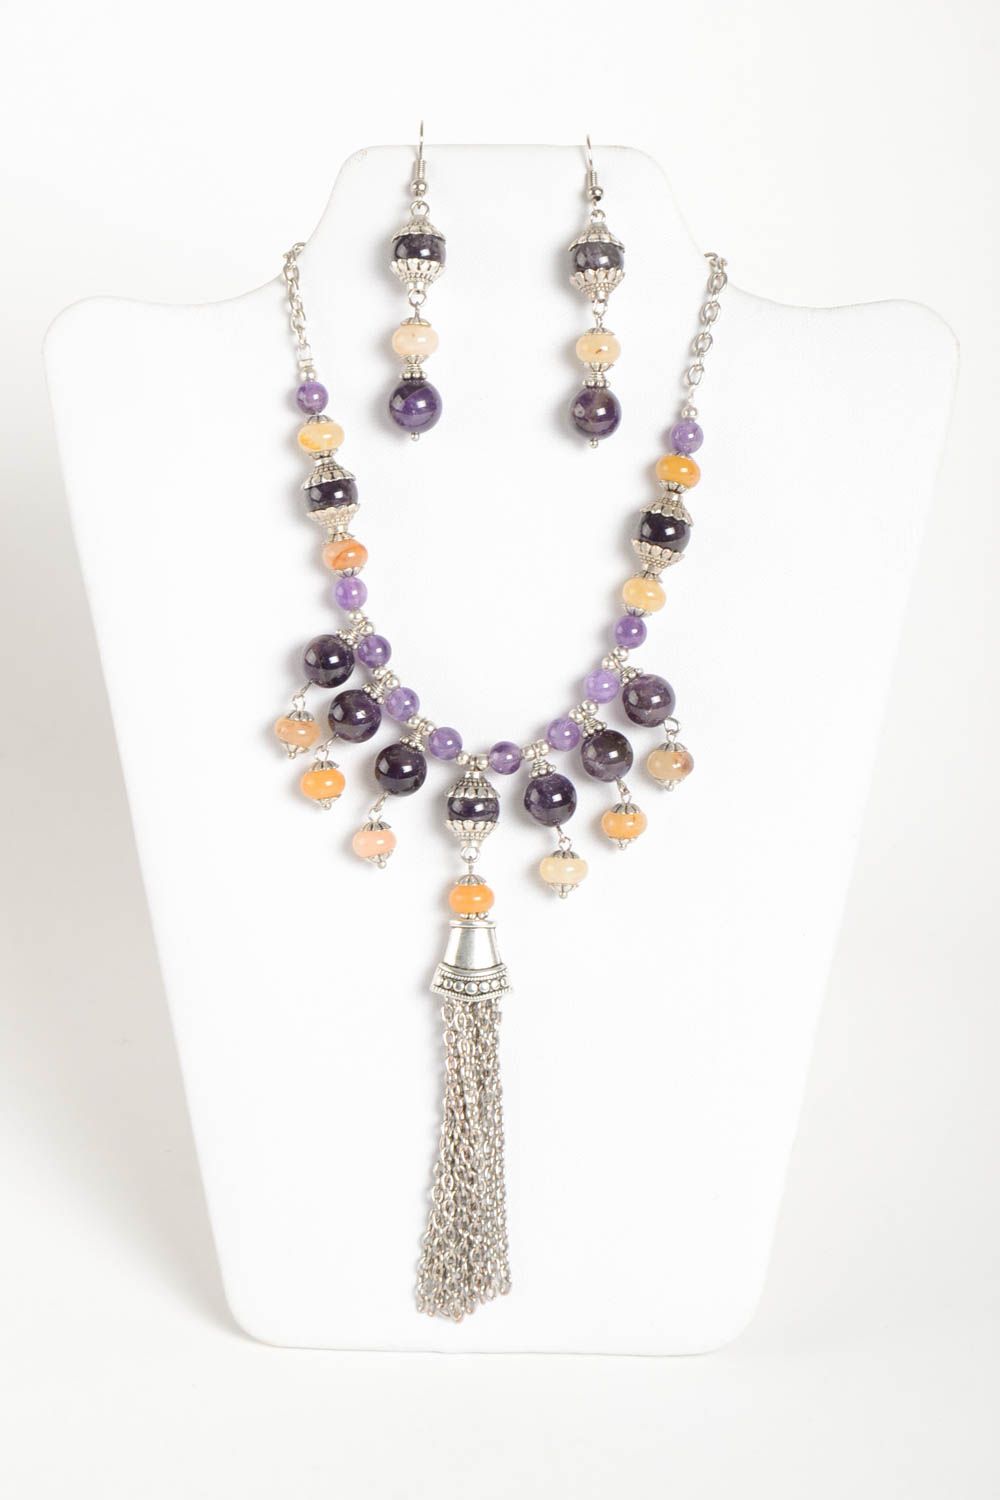 Handmade stylish earrings designer unusual necklace stylish jewelry set photo 2